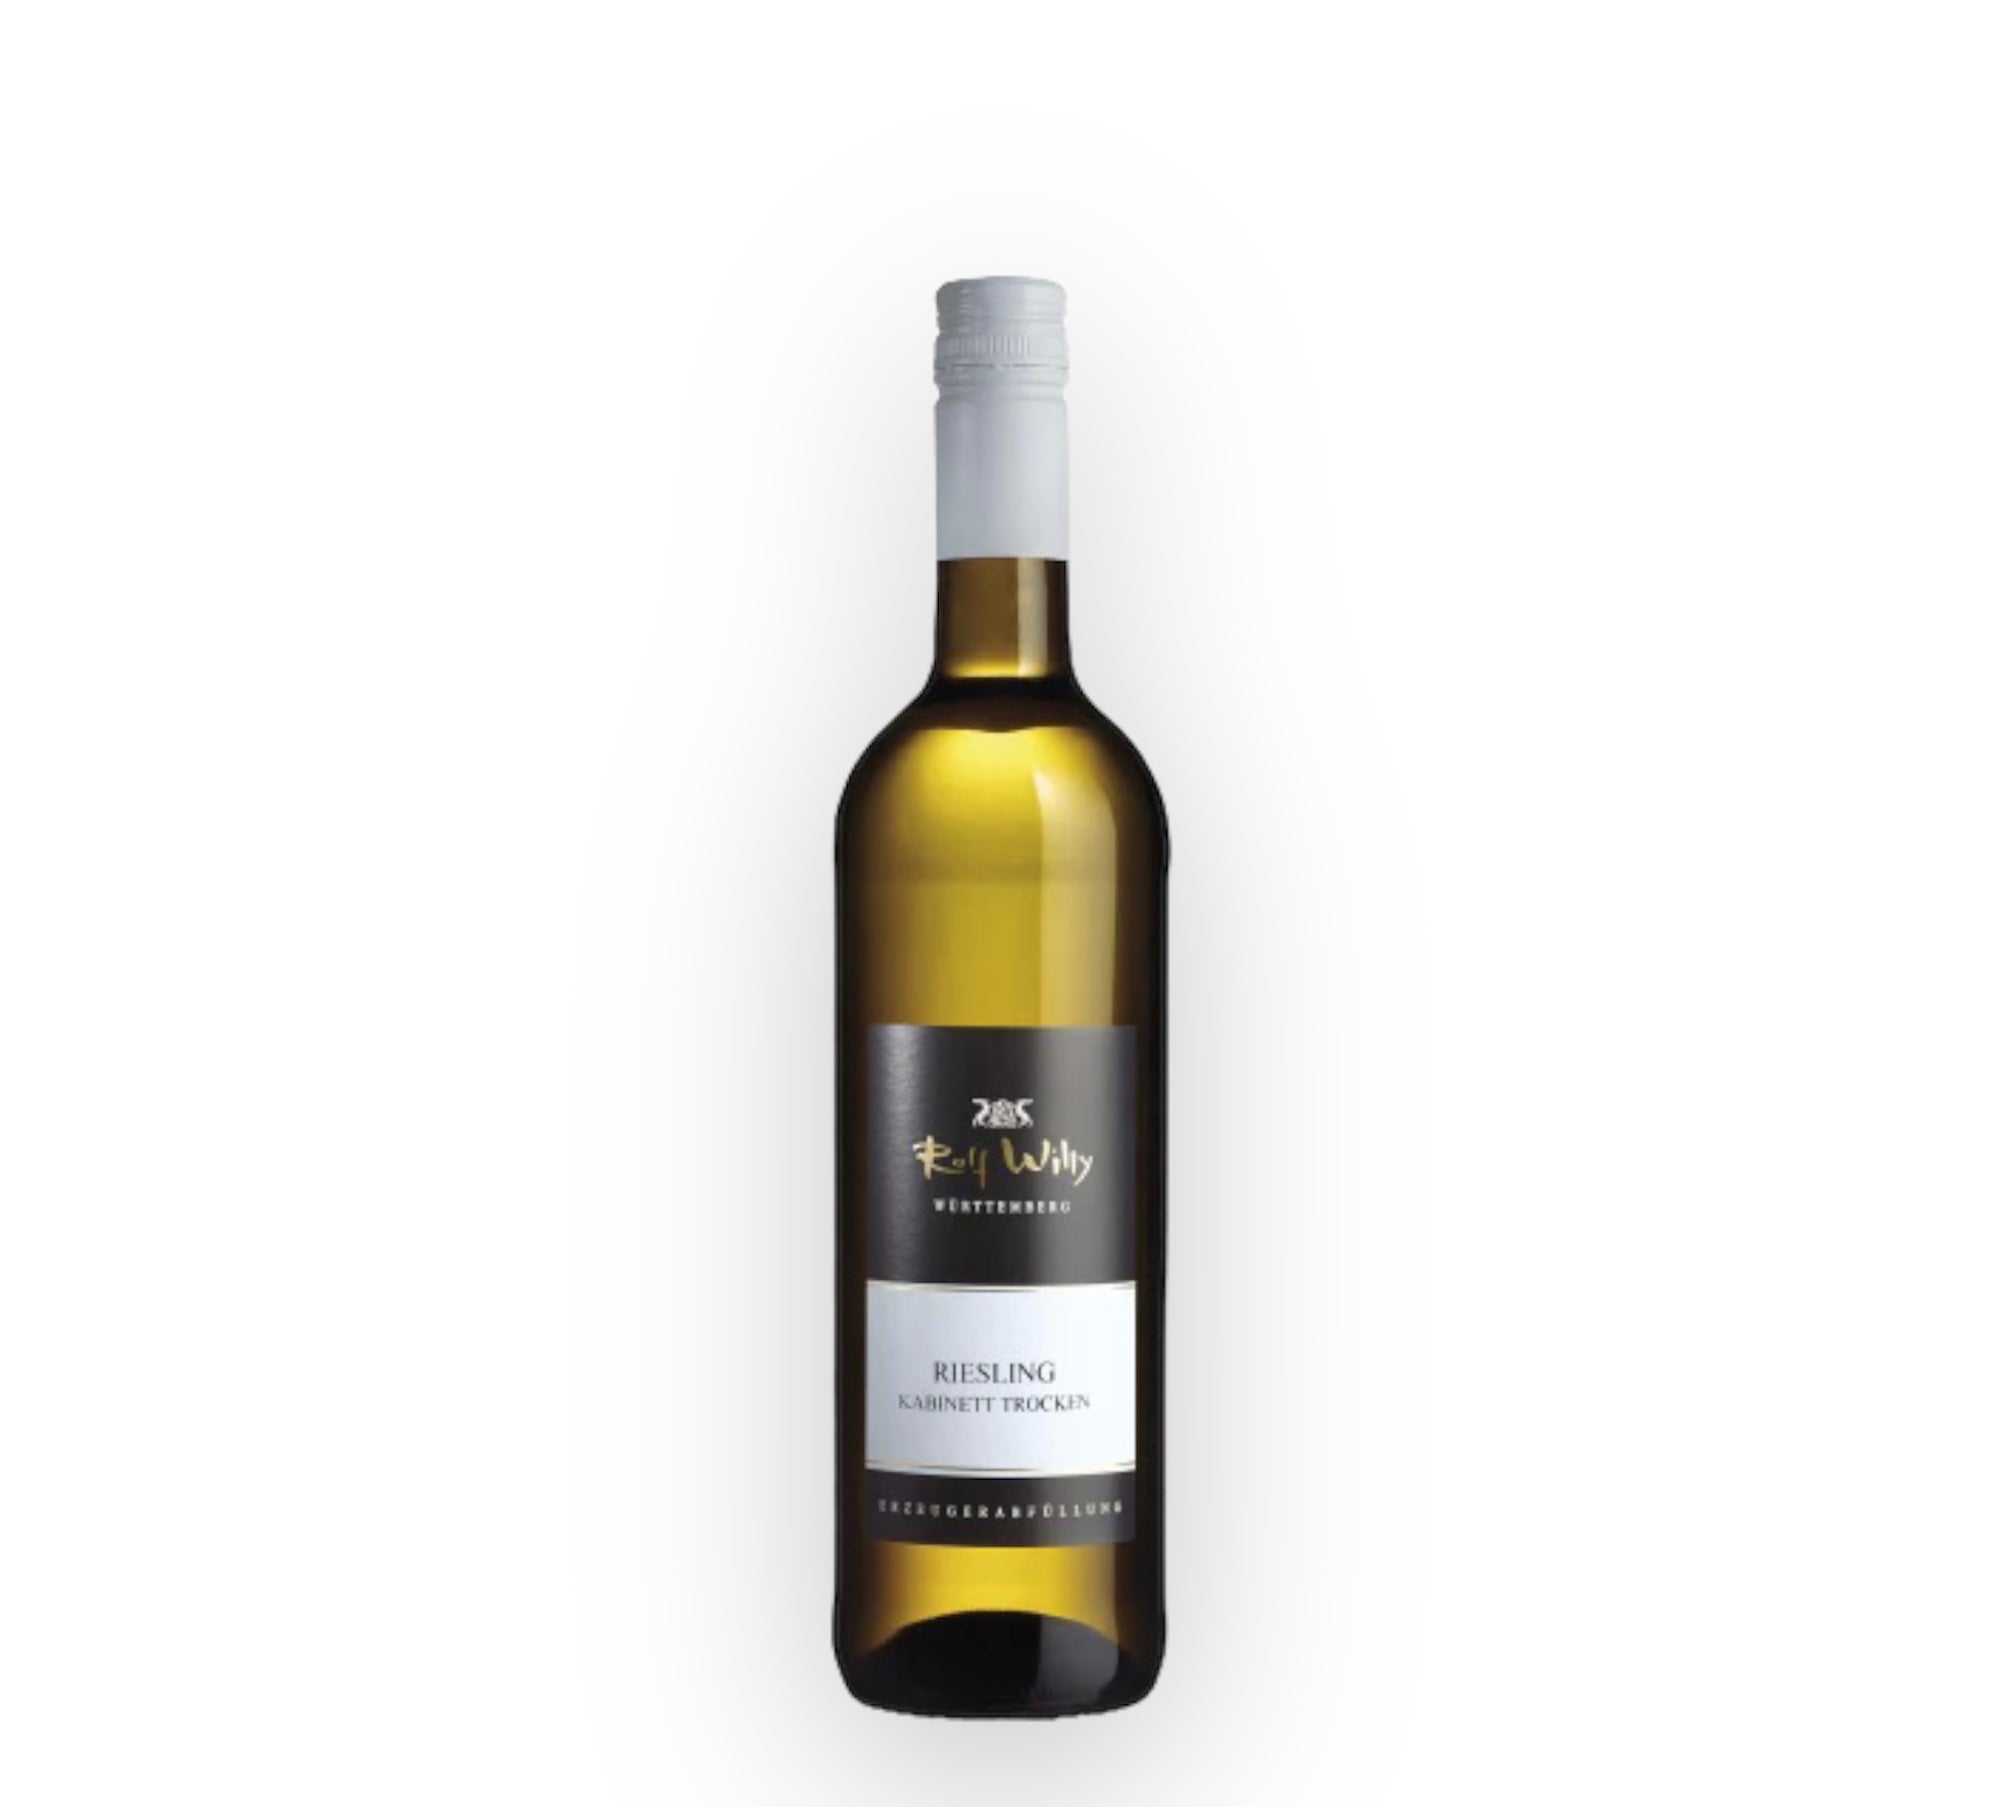 Rolf Willy Riesling Kabinett Trocken 2020 white wine 0.75l